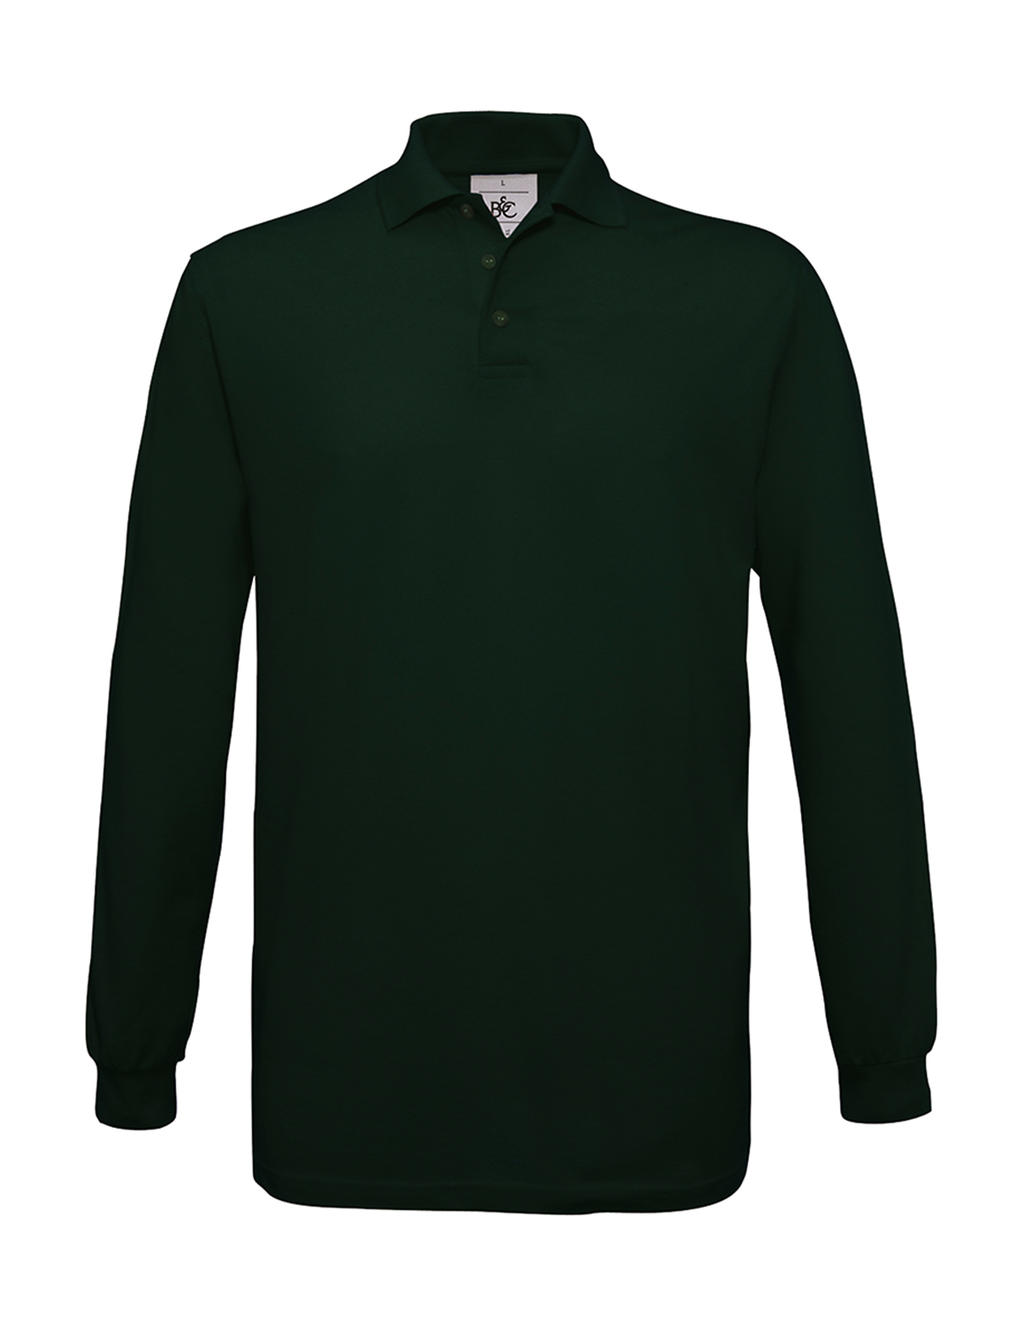 Pánské polo tričko B&C Safran s dlouhým rukávem - tmavě zelené, M